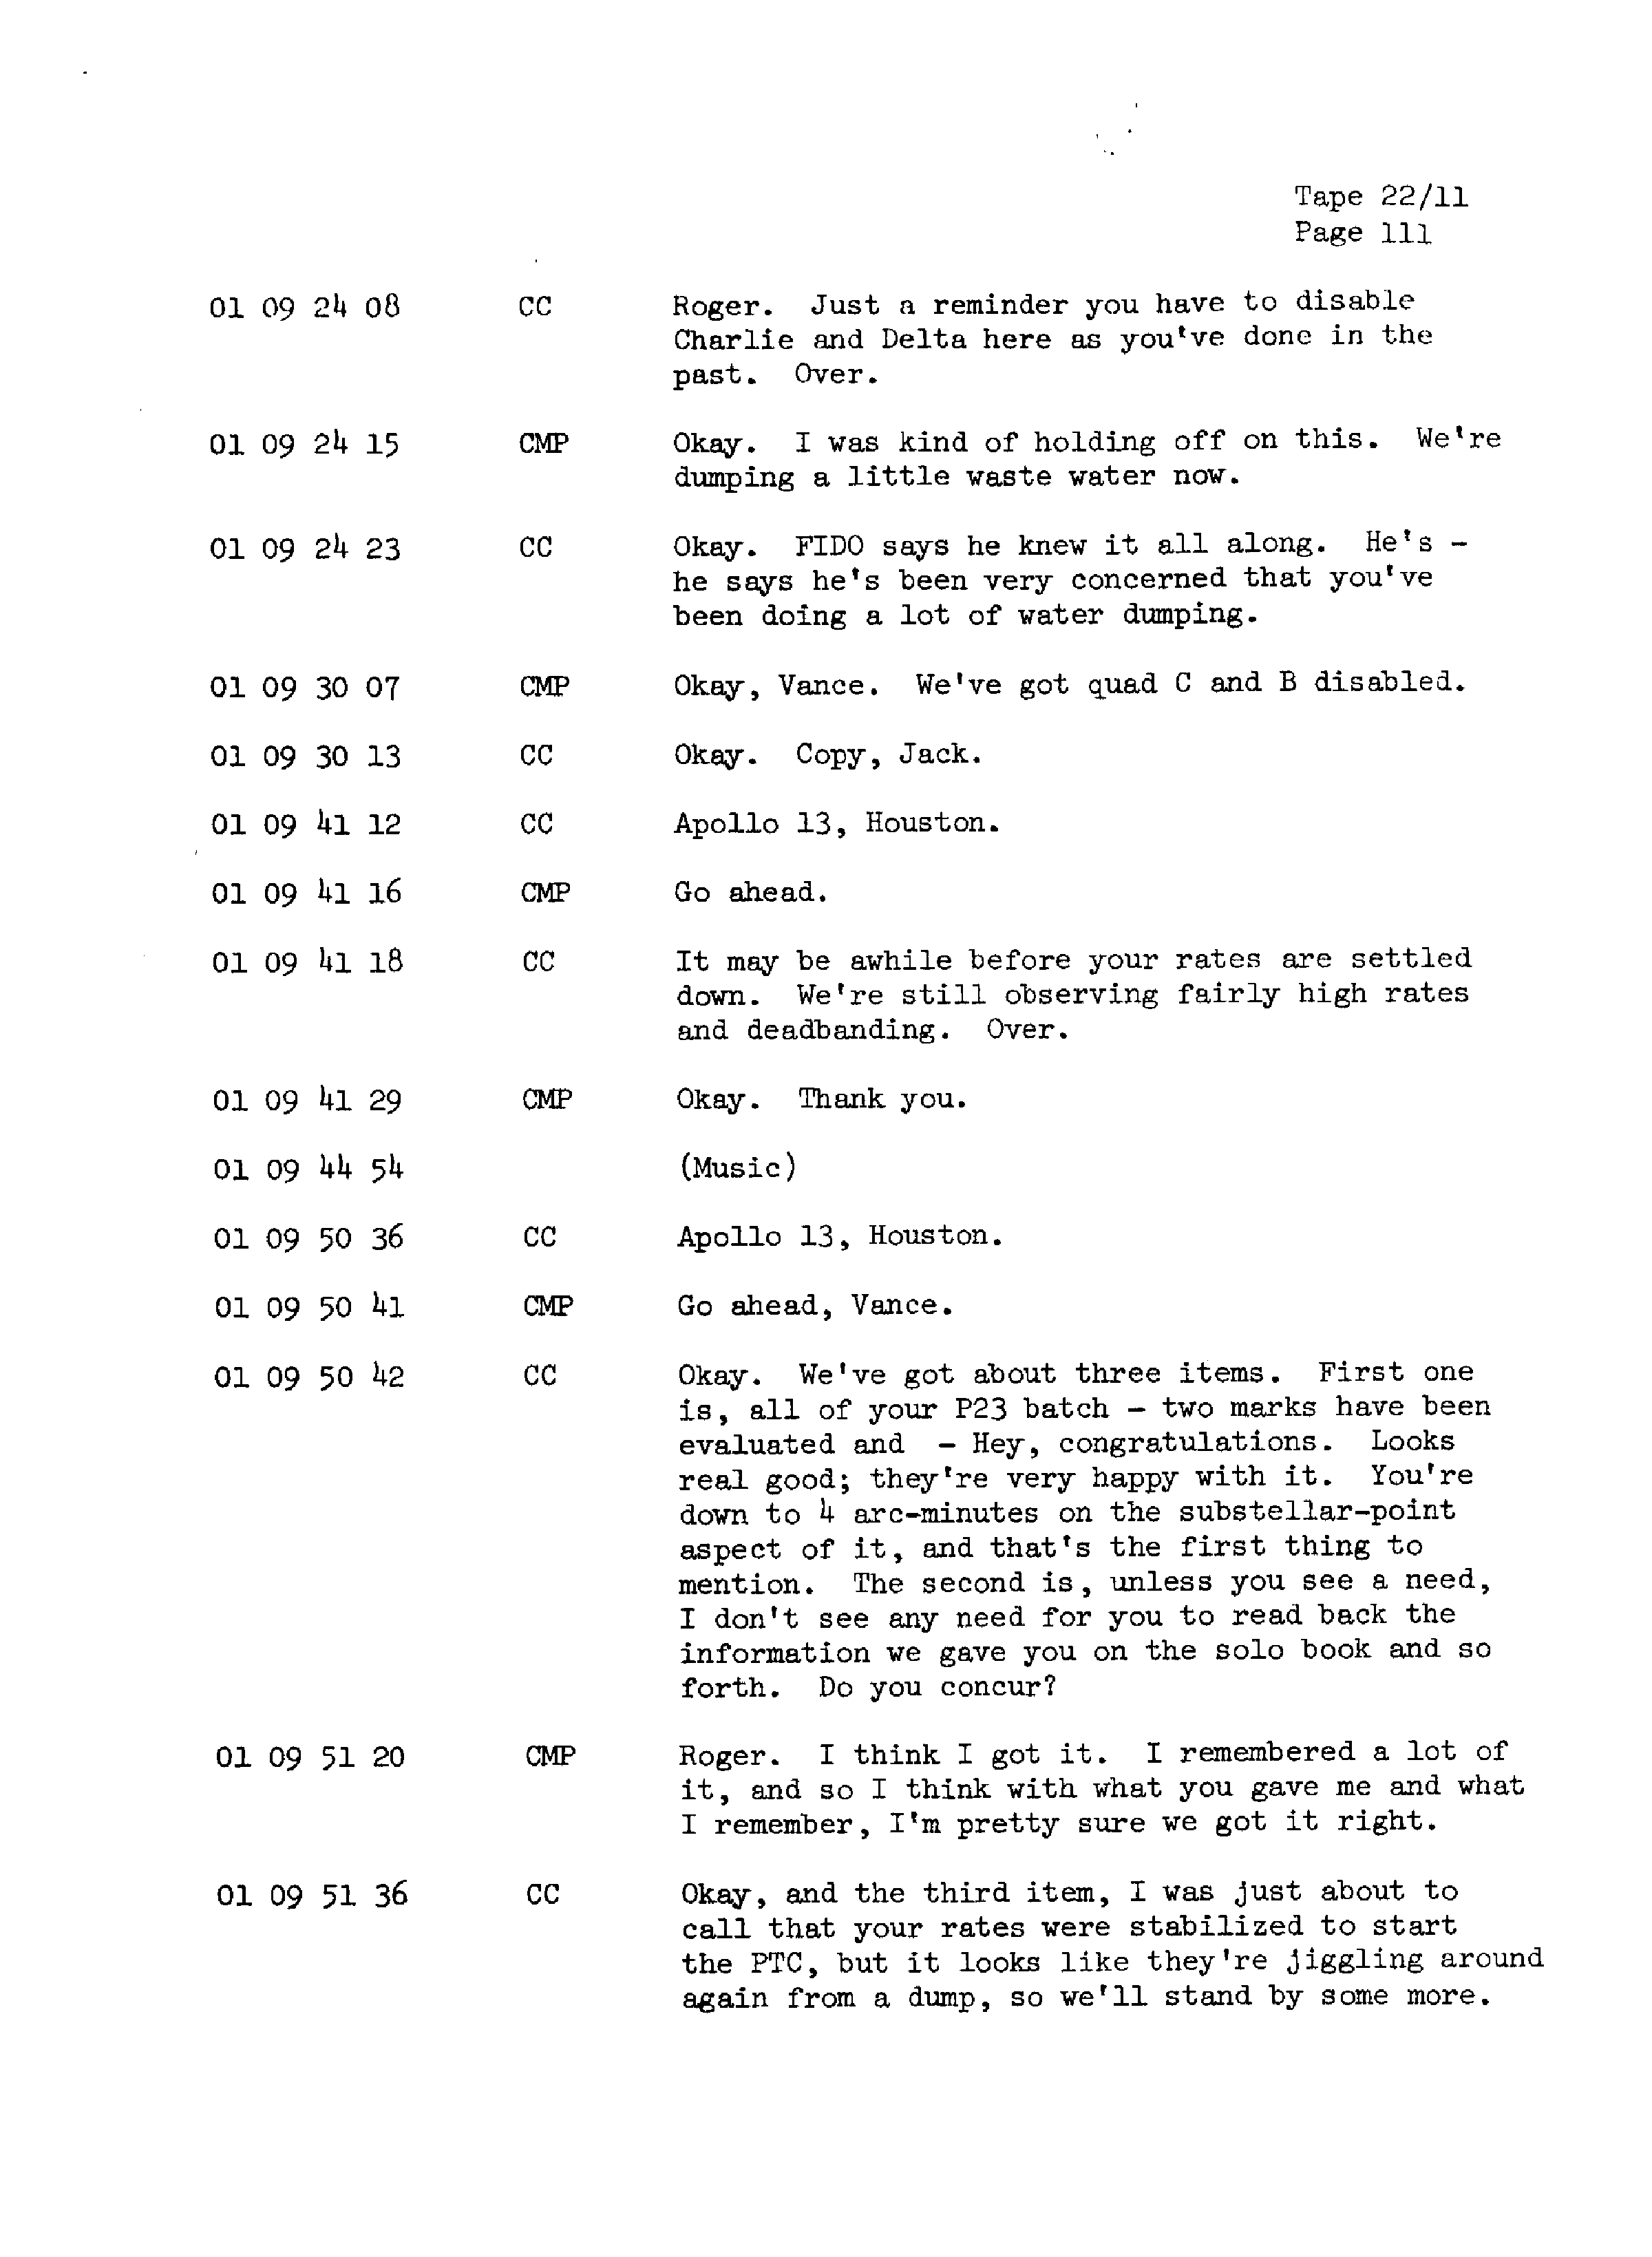 Page 118 of Apollo 13’s original transcript